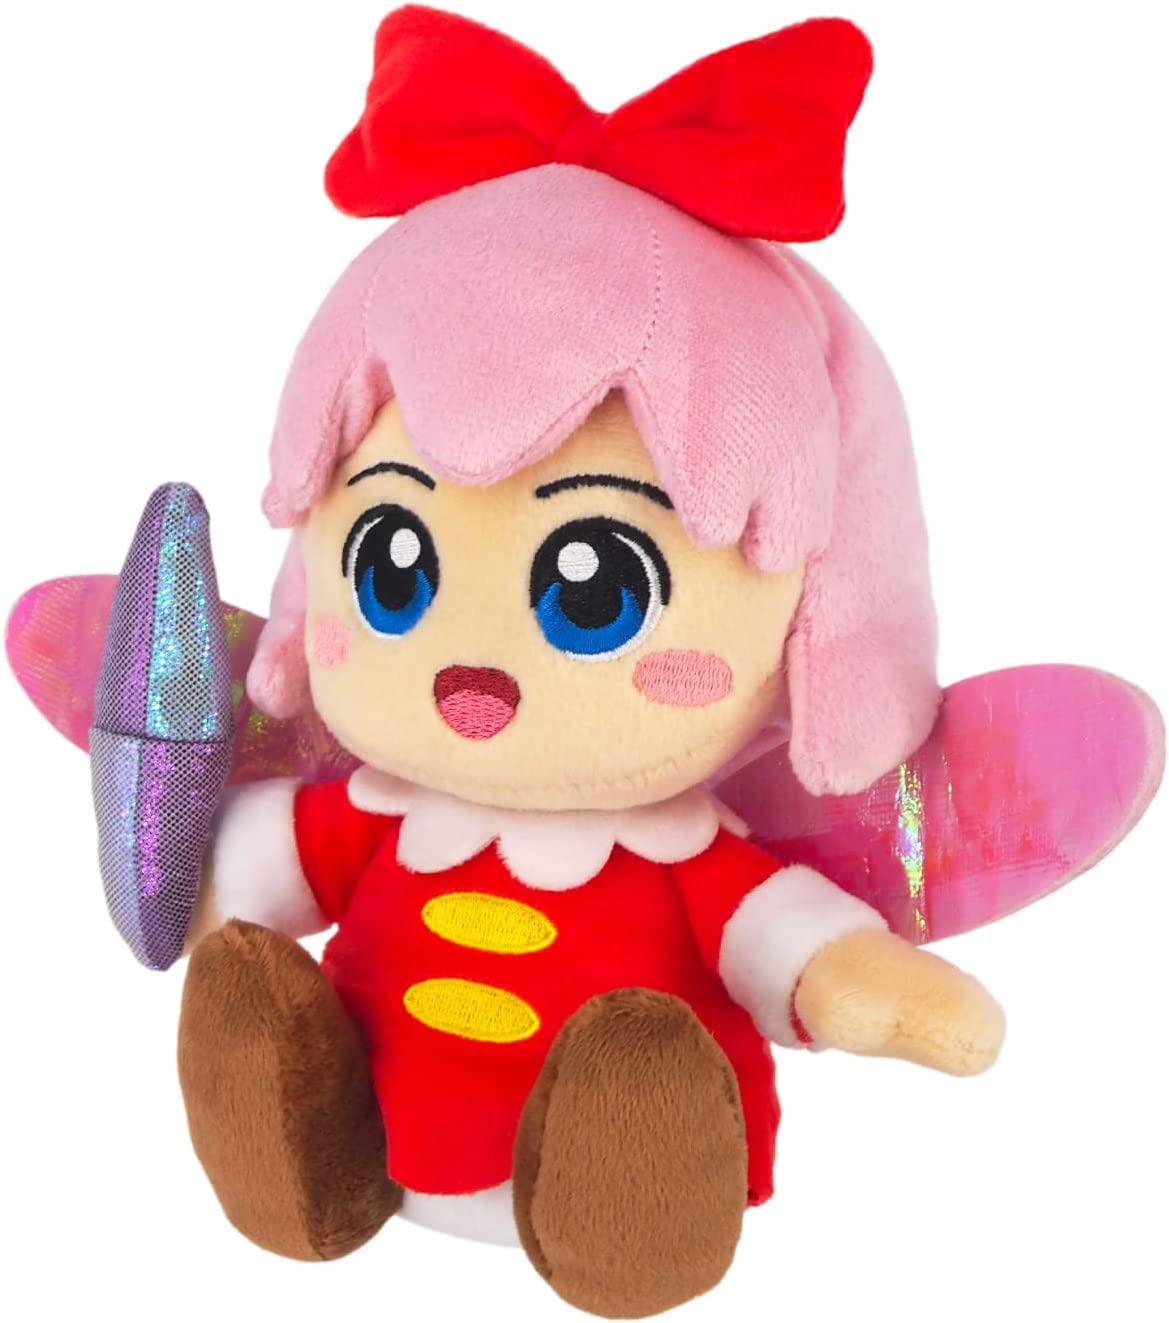 Peluche Kirby original de importación japonesa